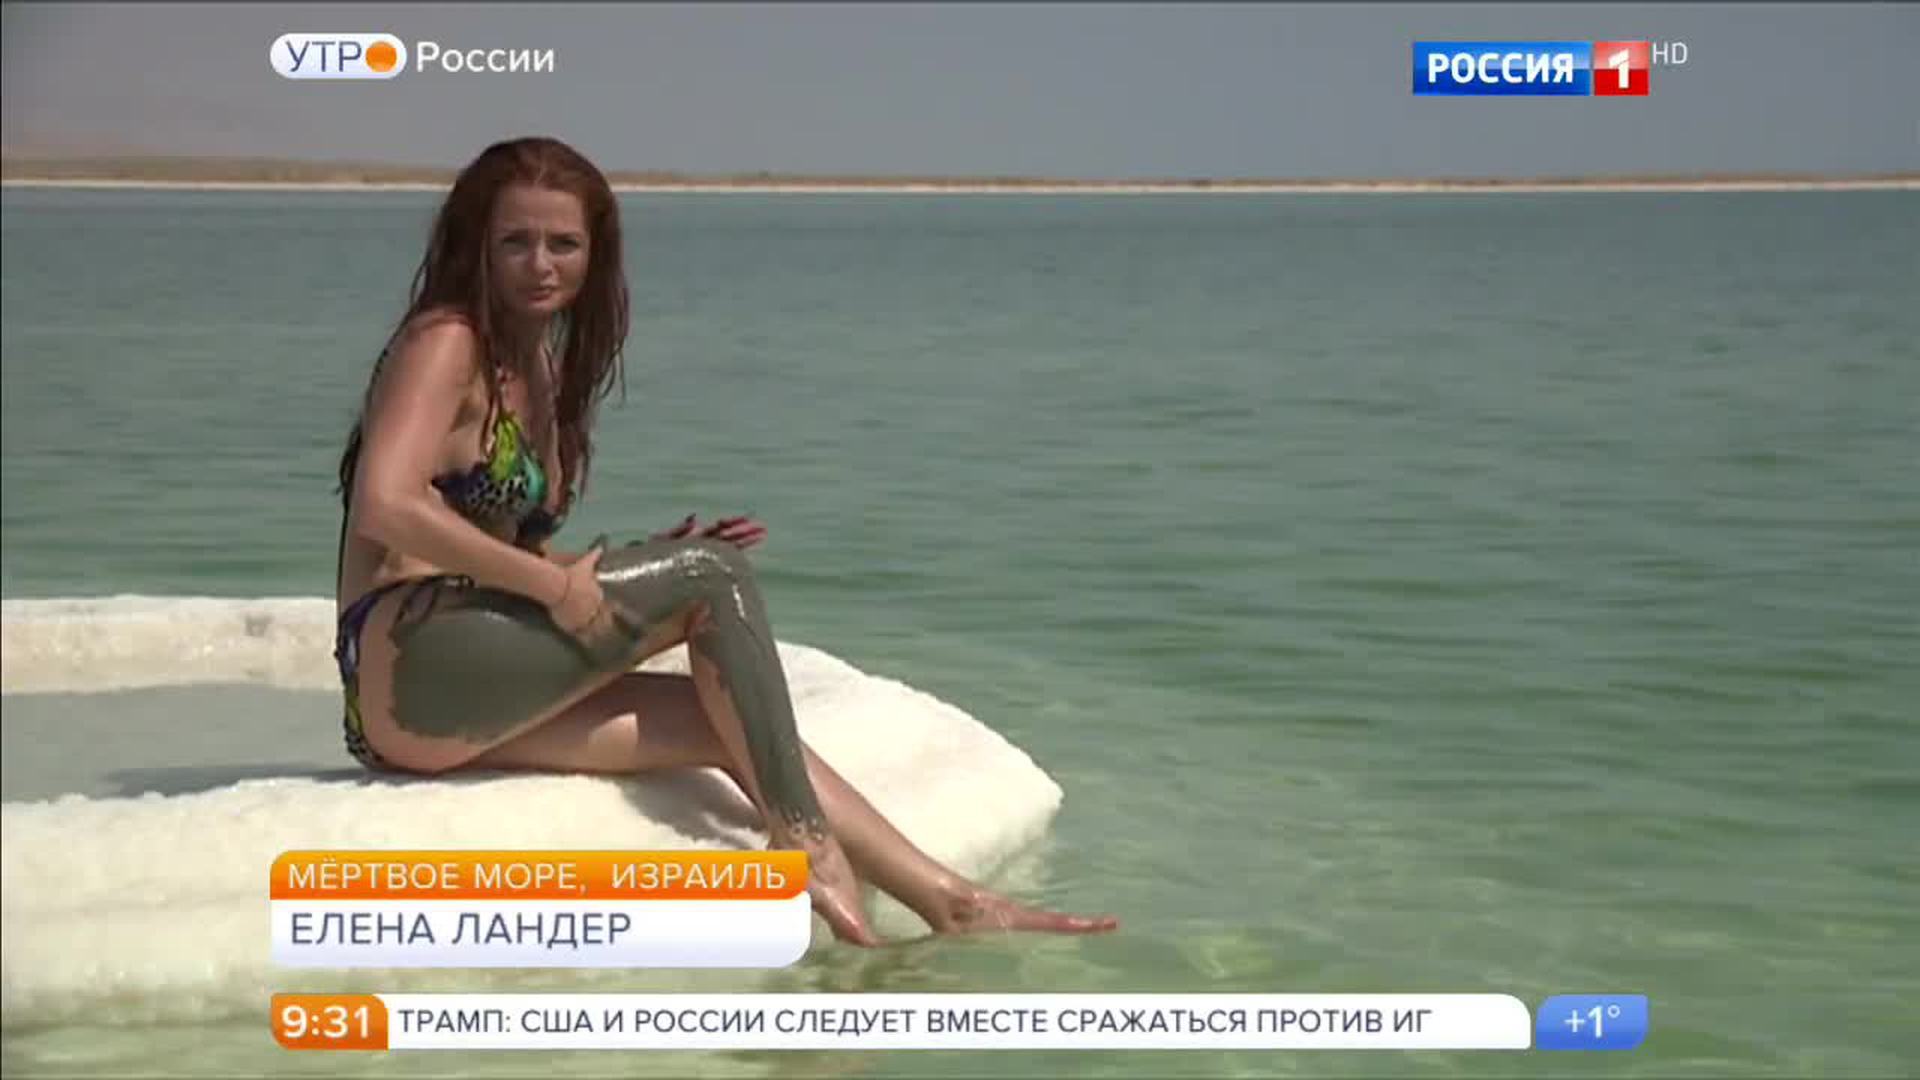 Елена николаева утро россии в купальнике